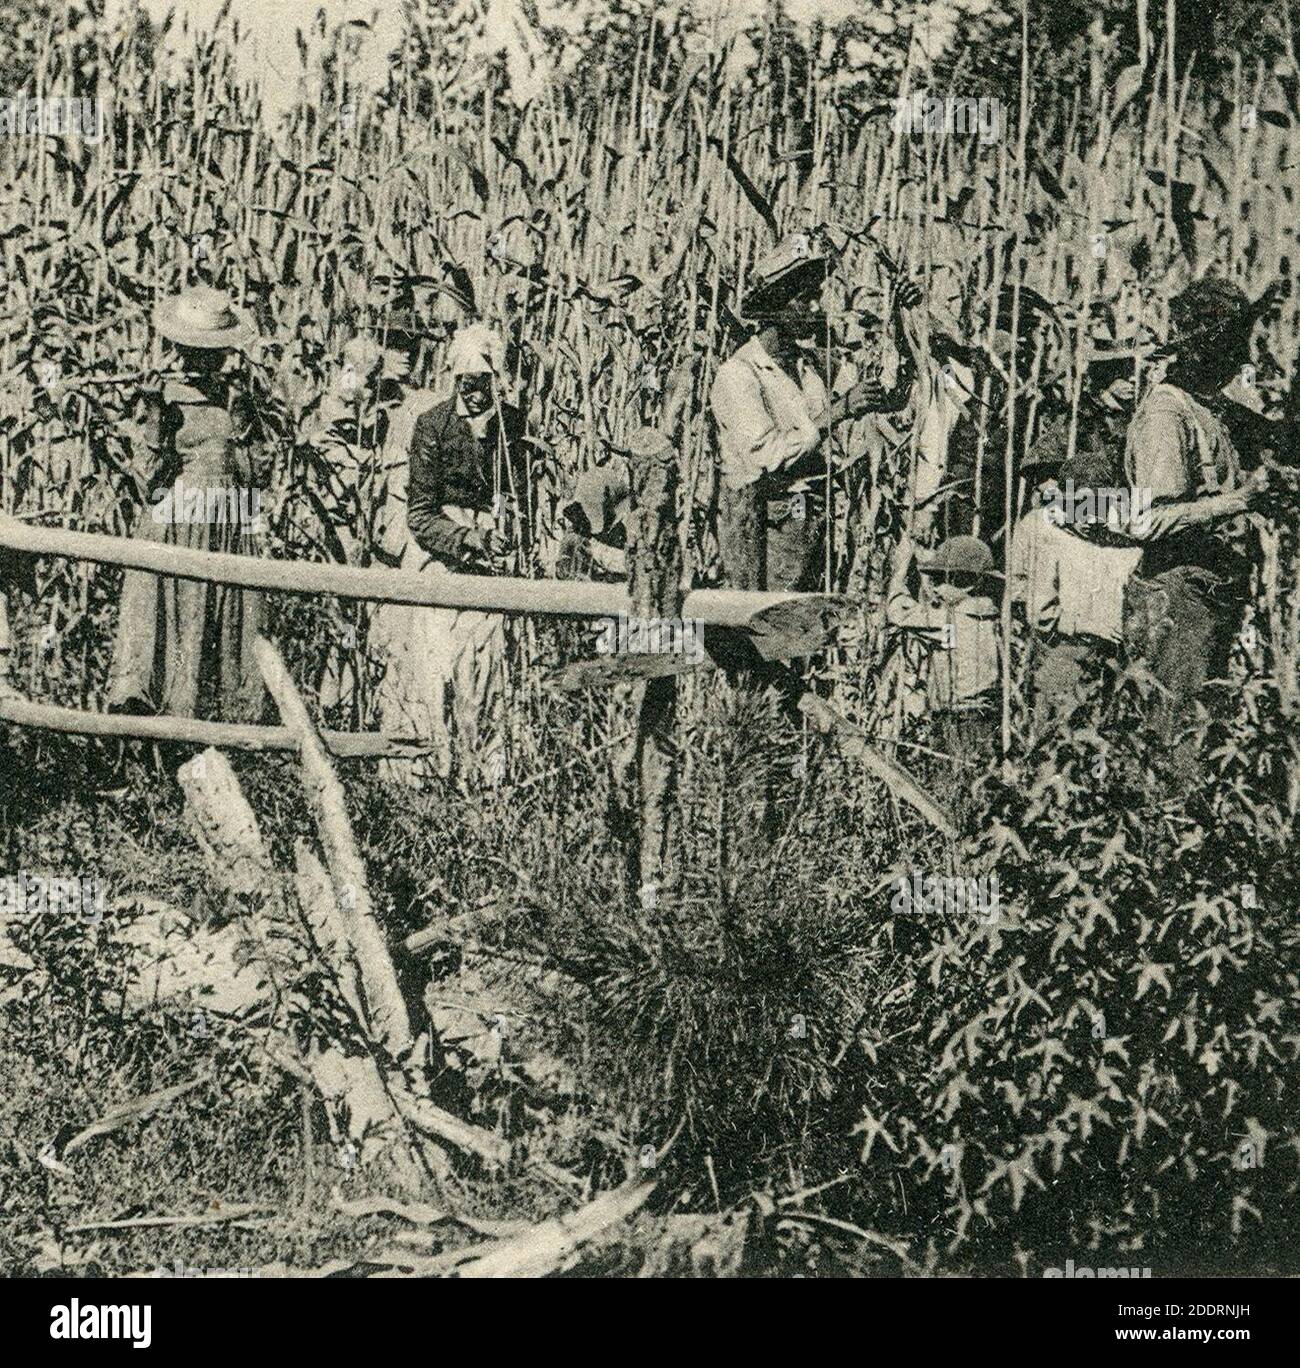 Knackstedt & Näther Stereoskopie 0669 Cuba. Zuckerrohr-Plantage. Bildseite mit Ansicht um 1900 arbeitender Sklaven im Feld auf Kuba (cropped). Stock Photo